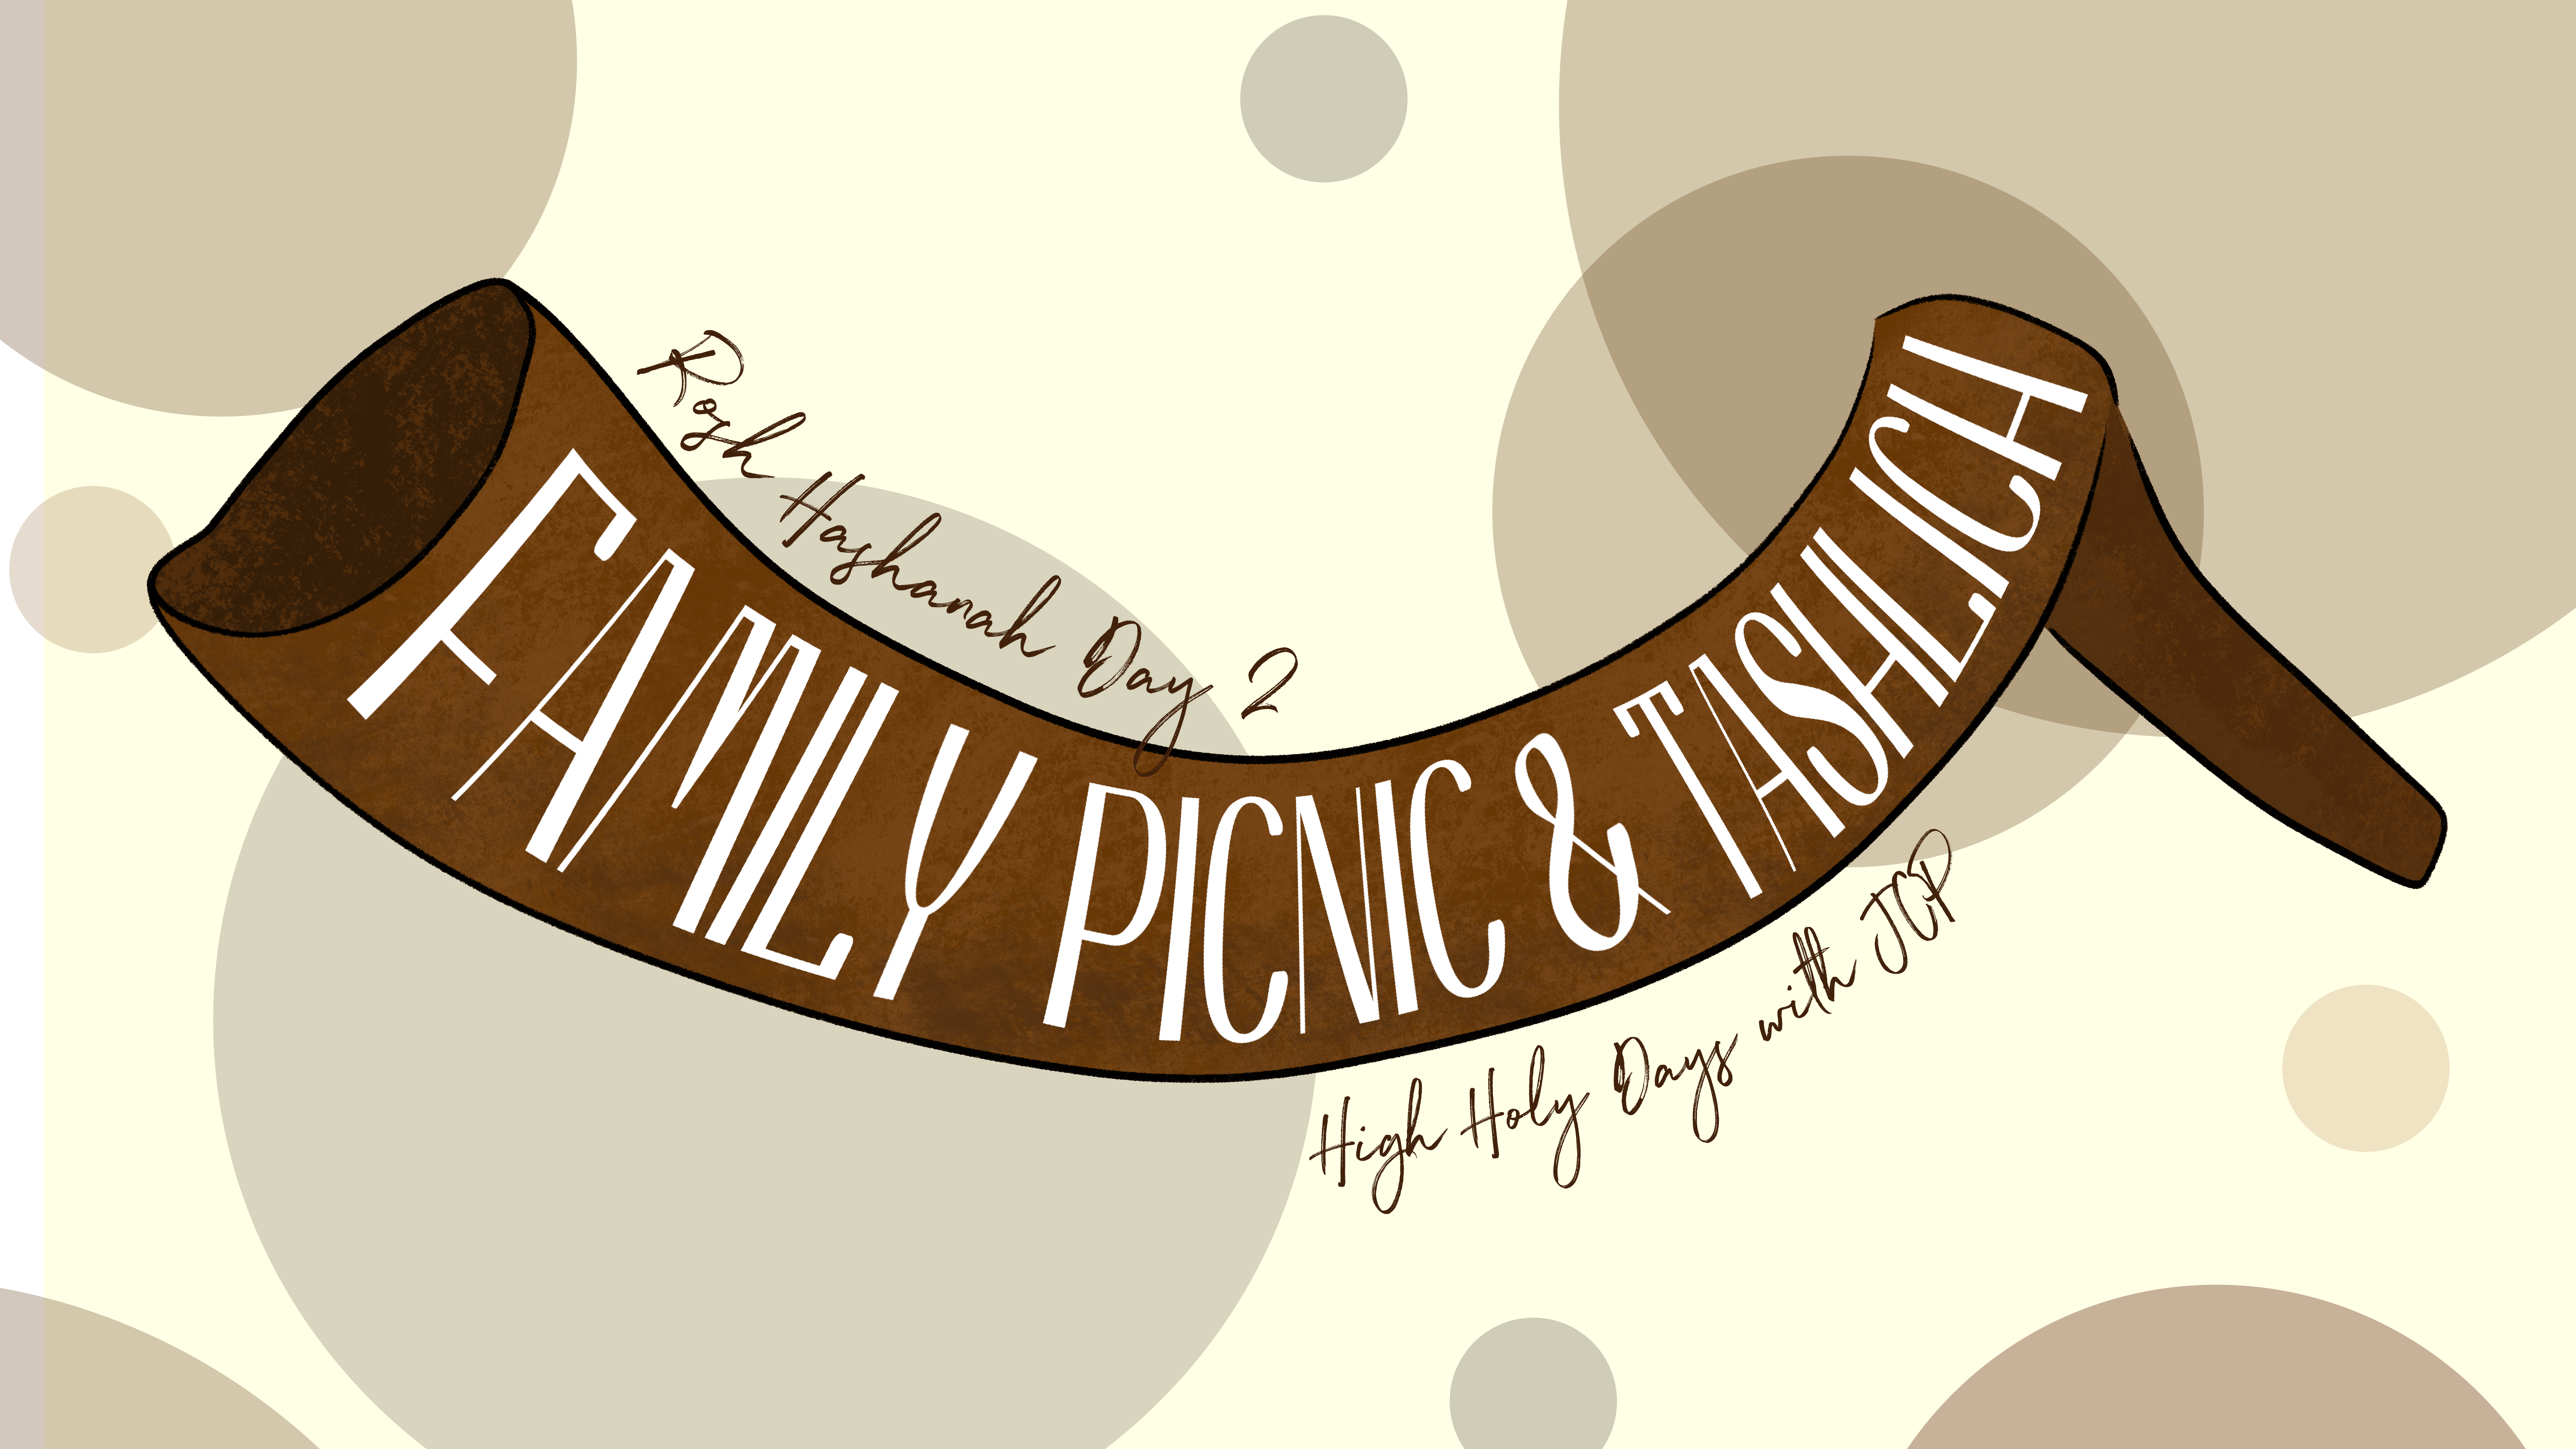 Rosh Hashanah Day 2 Family Picnic & Tashlich